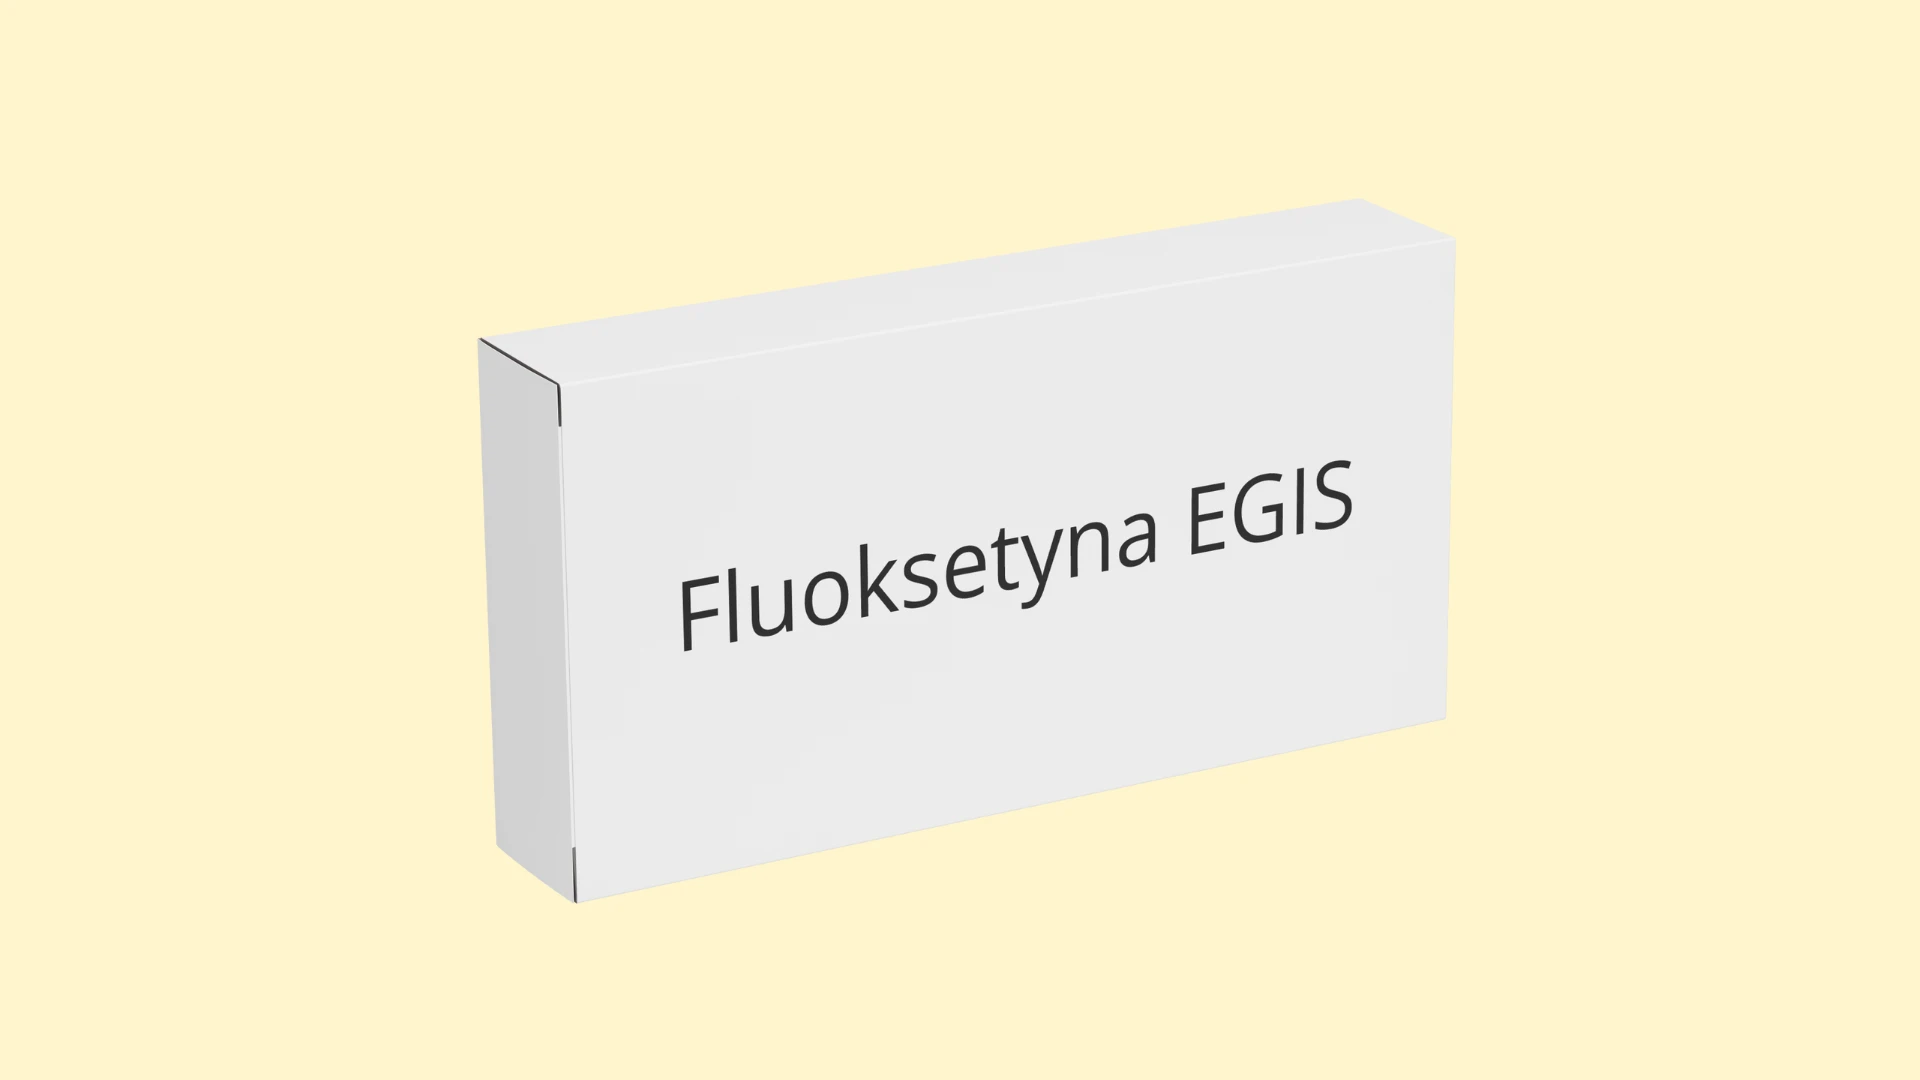 Fluoksetyna EGIS - Recepta online - e-Recepta z konsultacją | cena, dawkowanie, przeciwwskazania